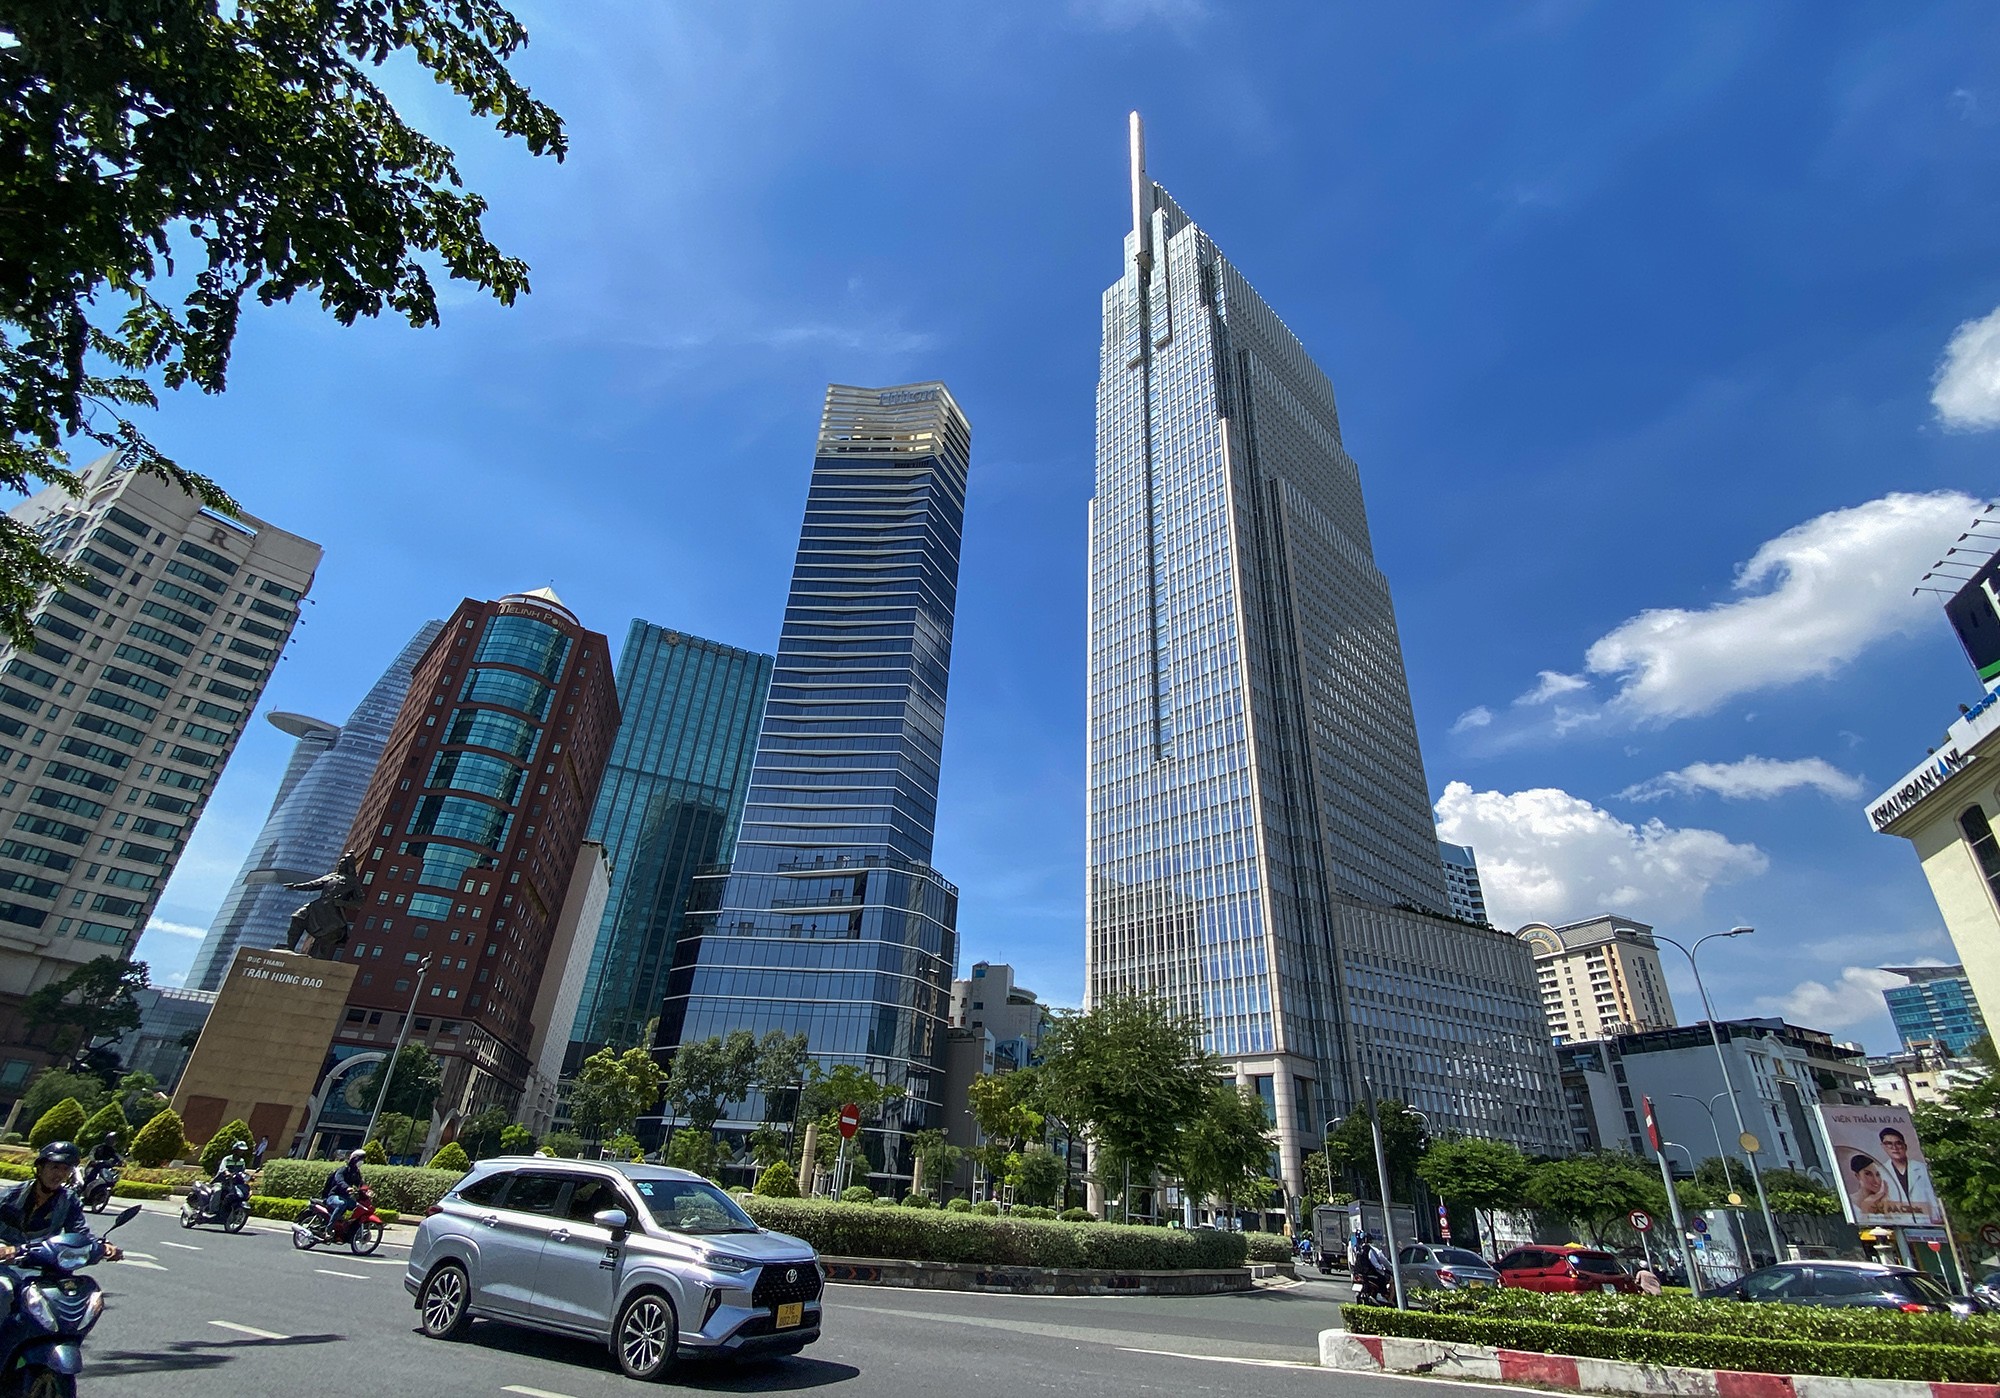 Vietcombank Tower do Liên doanh Vietcombank-Bonday (Hongkong)-Benthanh làm chủ đầu tư, có tổng diện tích sàn 71.000m2. Tòa nhà được hoàn thành năm 2015. Thời điểm đưa vào sử dụng, Vietcombank Tower là toà nhà cao thứ 4 tại Việt Nam sau cao ốc Keangnam Lanmark 72 (Hà Nội - 336m), Hanoi Lotte Center (Hà Nội - 267m), Bitexco Financial Tower (TP.HCM - 262m).